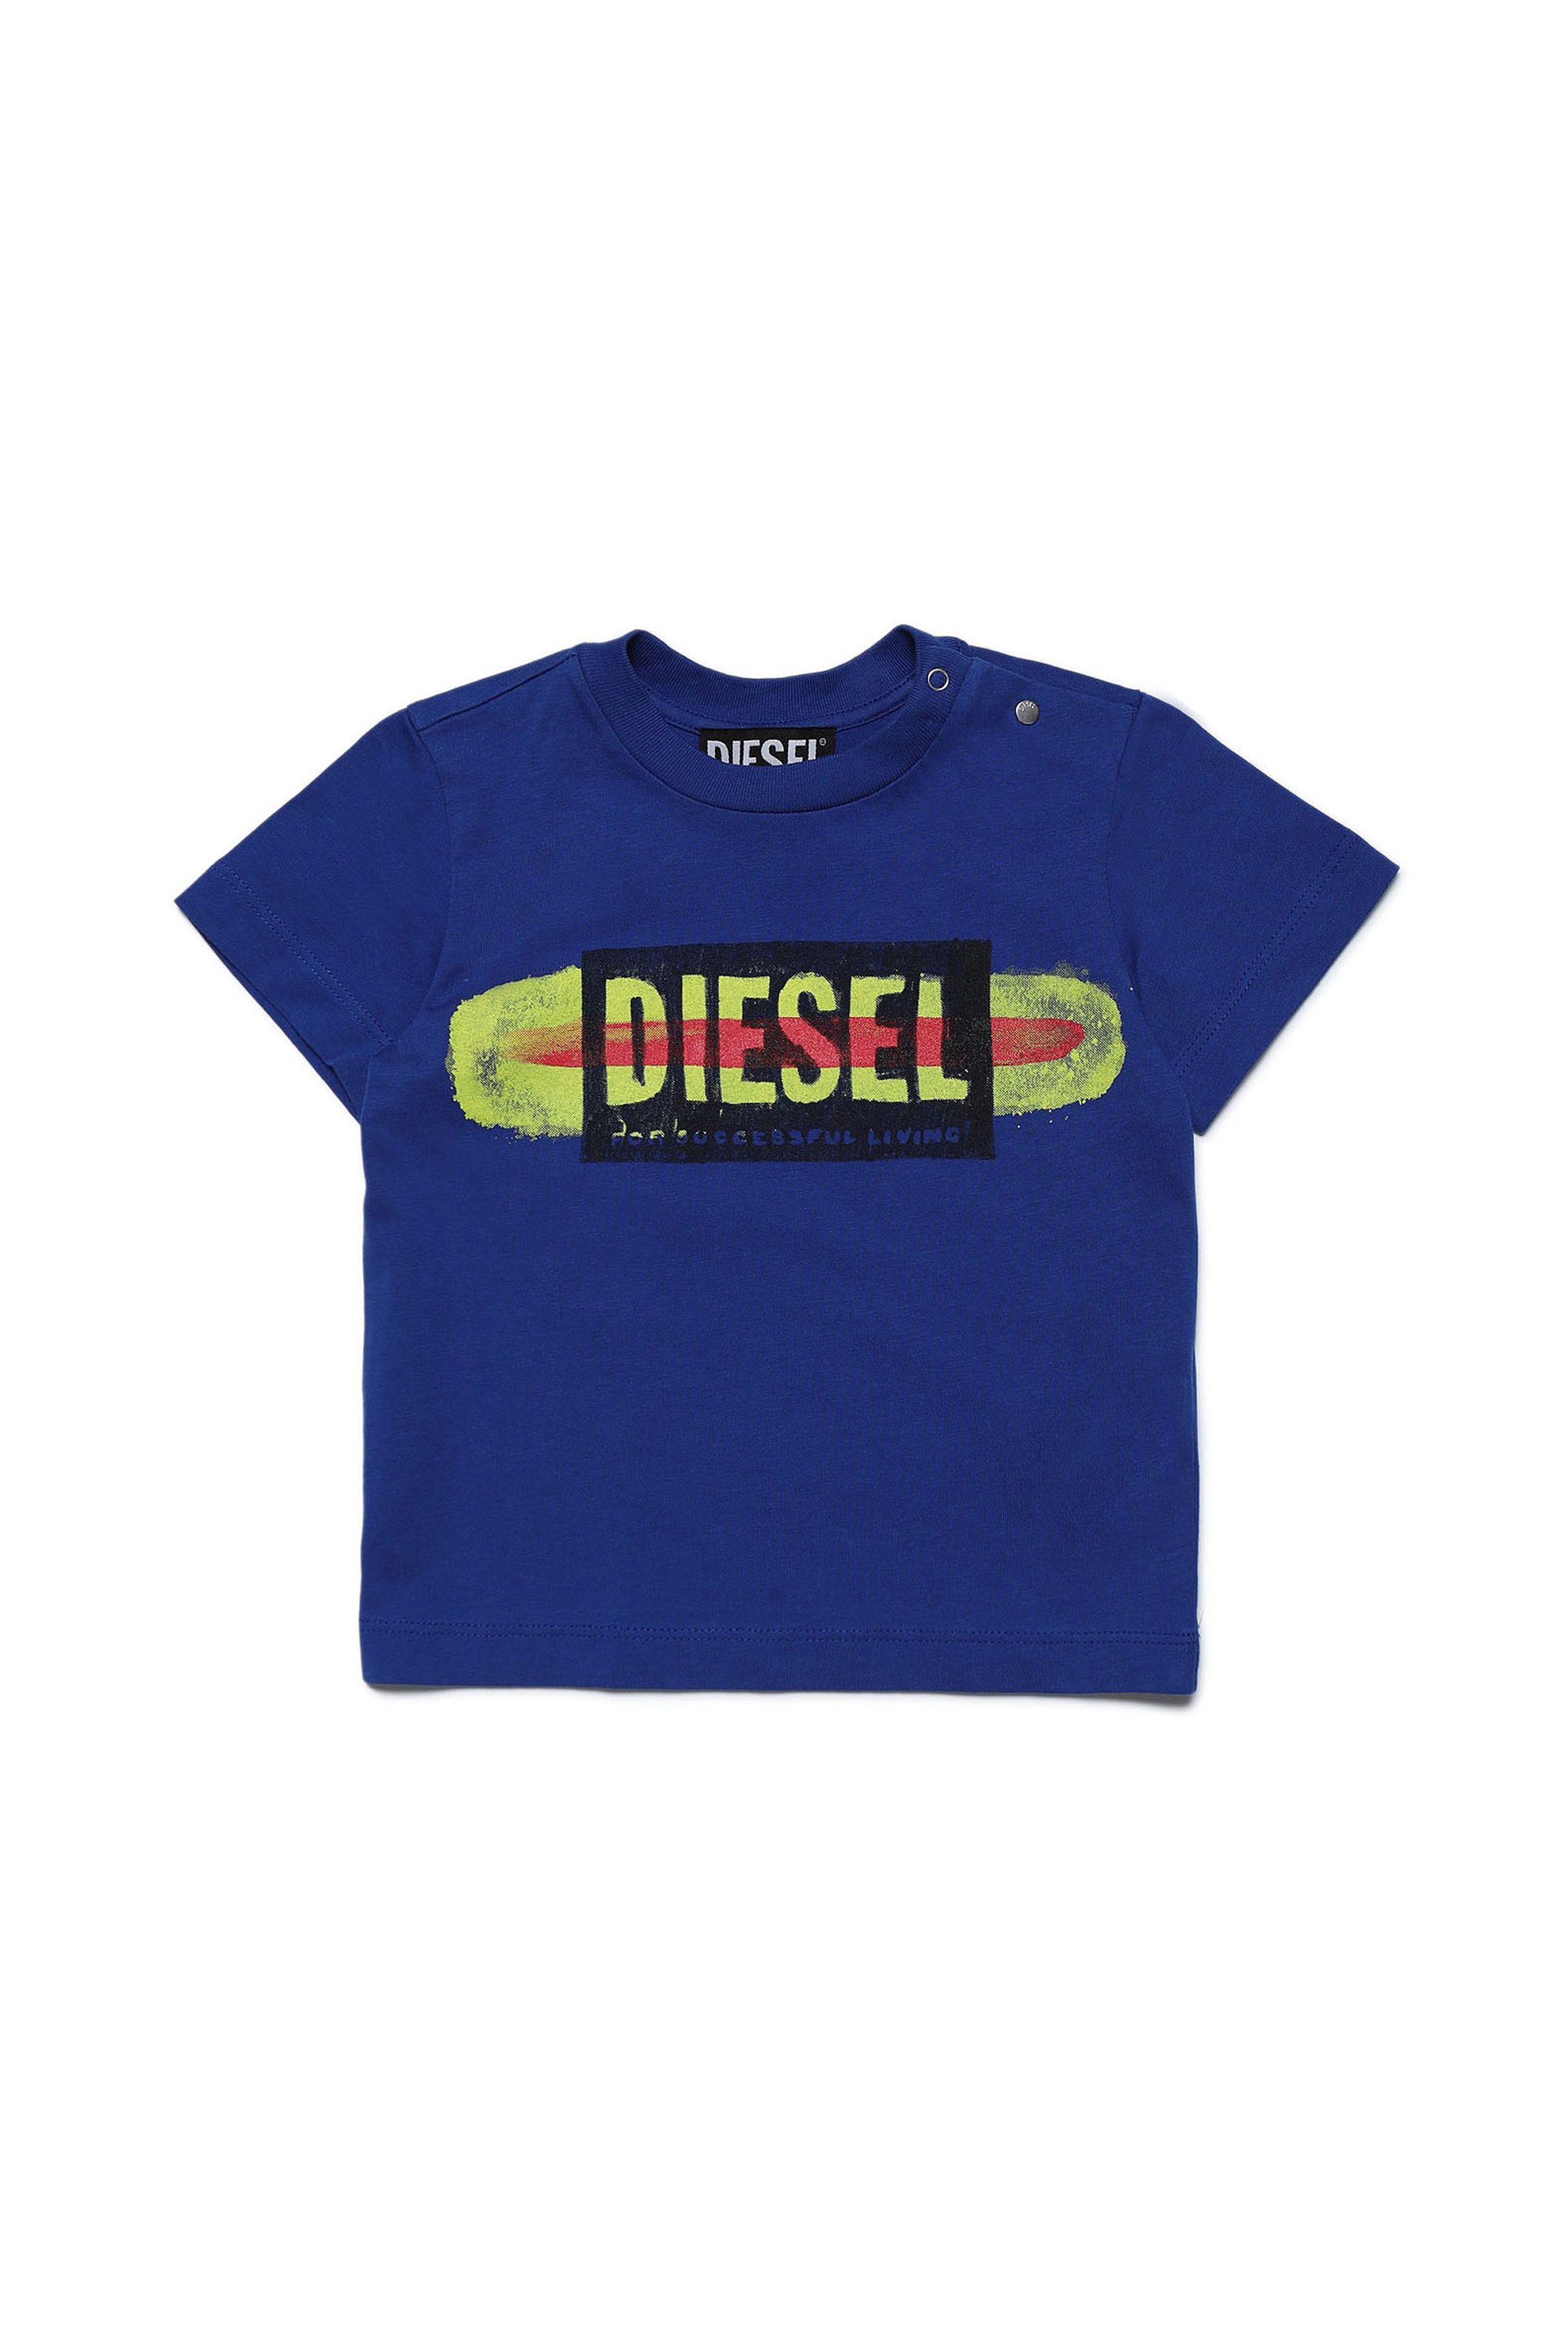 Diesel - TARYB, Blue - Image 1